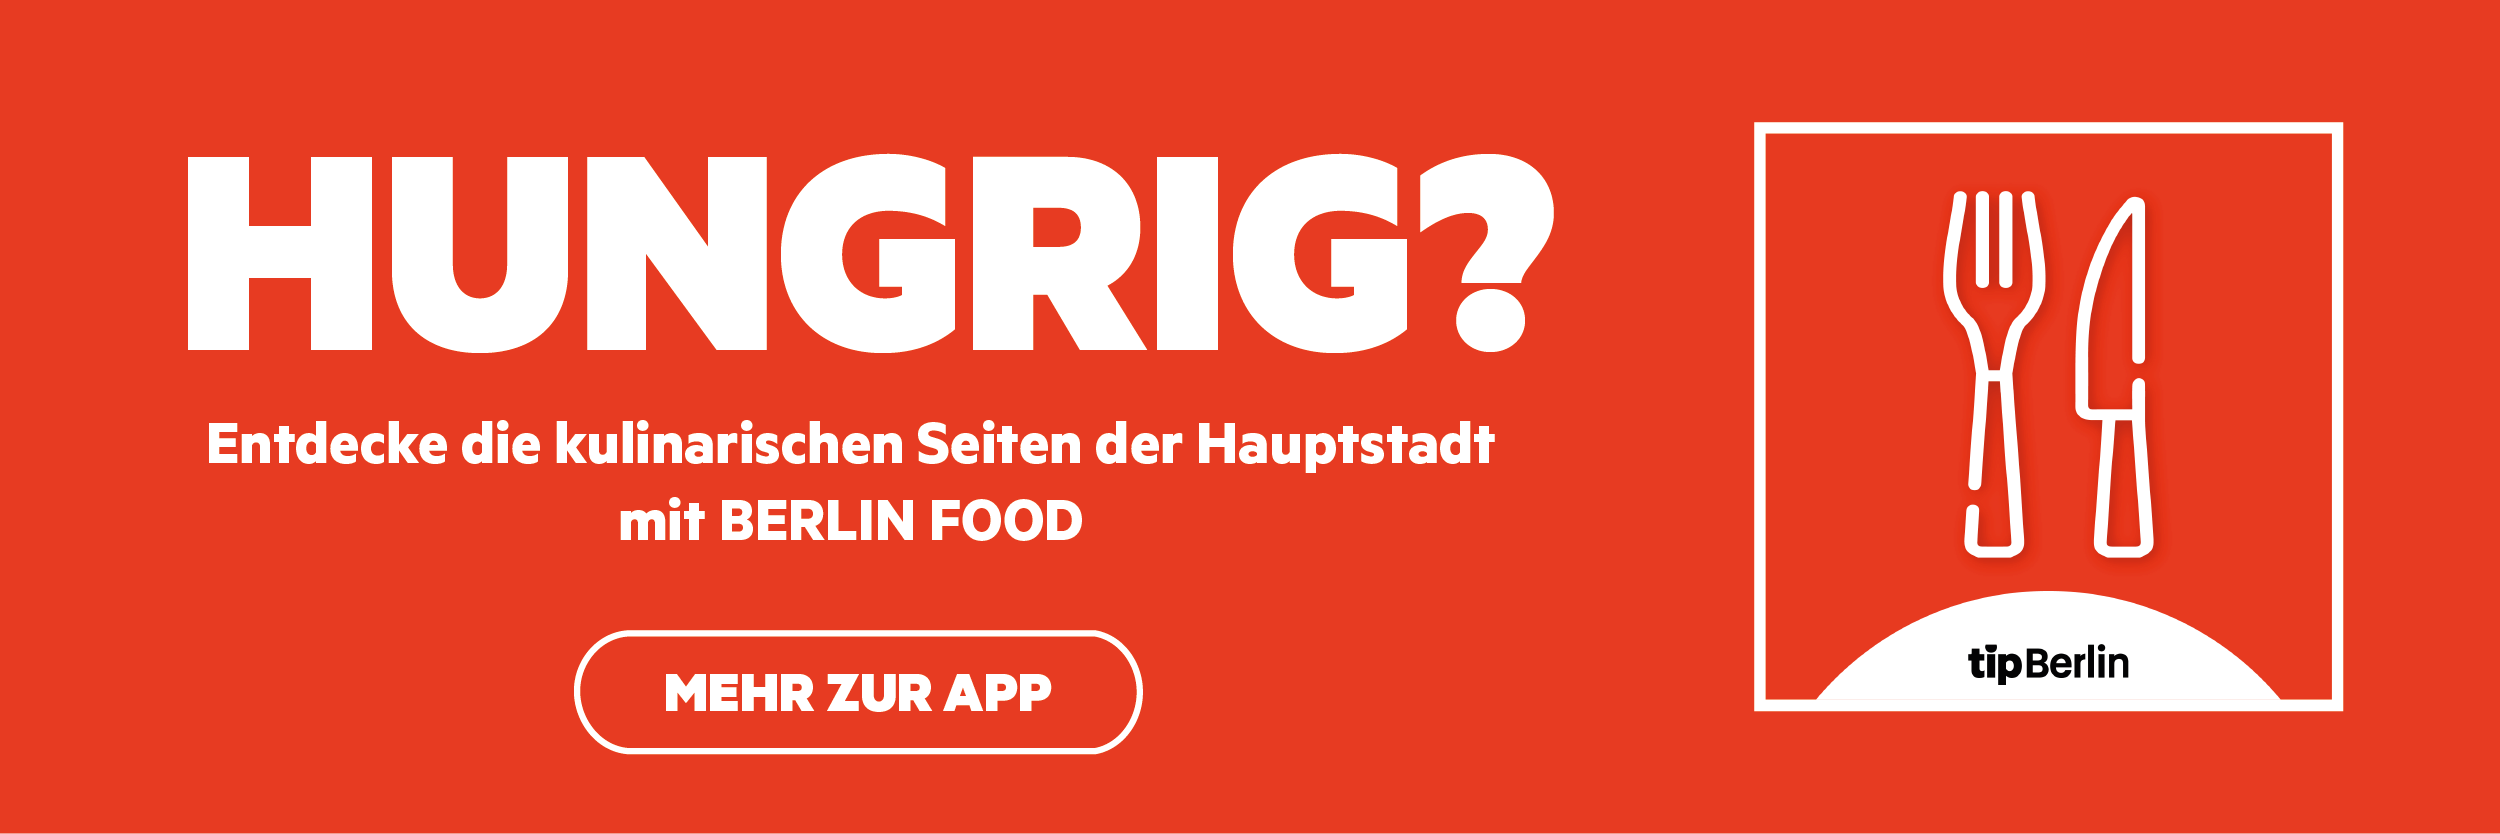 Mit der Berlin Food App von tipBerlin ist das passende Restaurant schnell gefunden. Download unter 
https://www.tip-berlin.de/berlin-food-app-restaurants-tip-berlin/